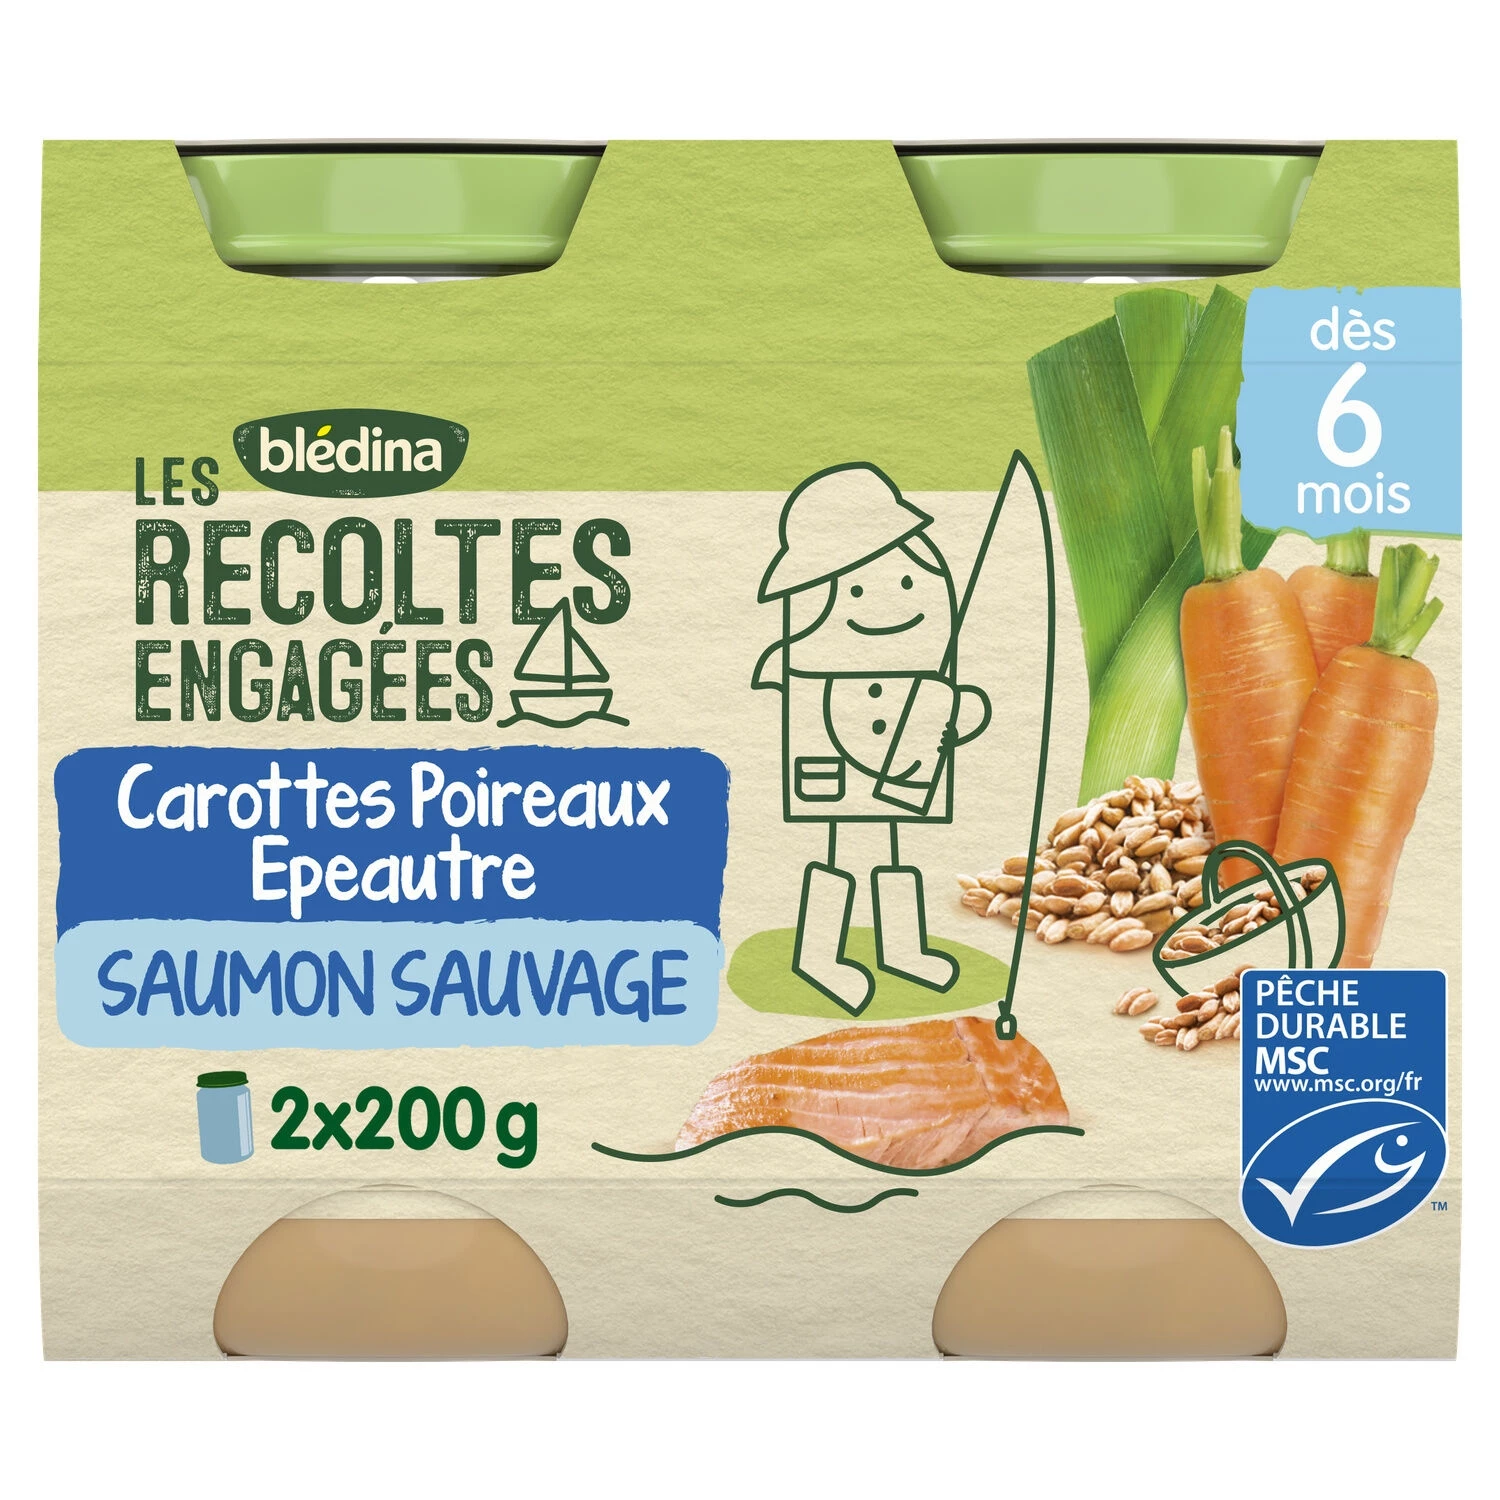 Les récoltes engagées petit pot carottes poireaux épeautre saumon sauvage dès 6 mois 2x200g - BLEDINA